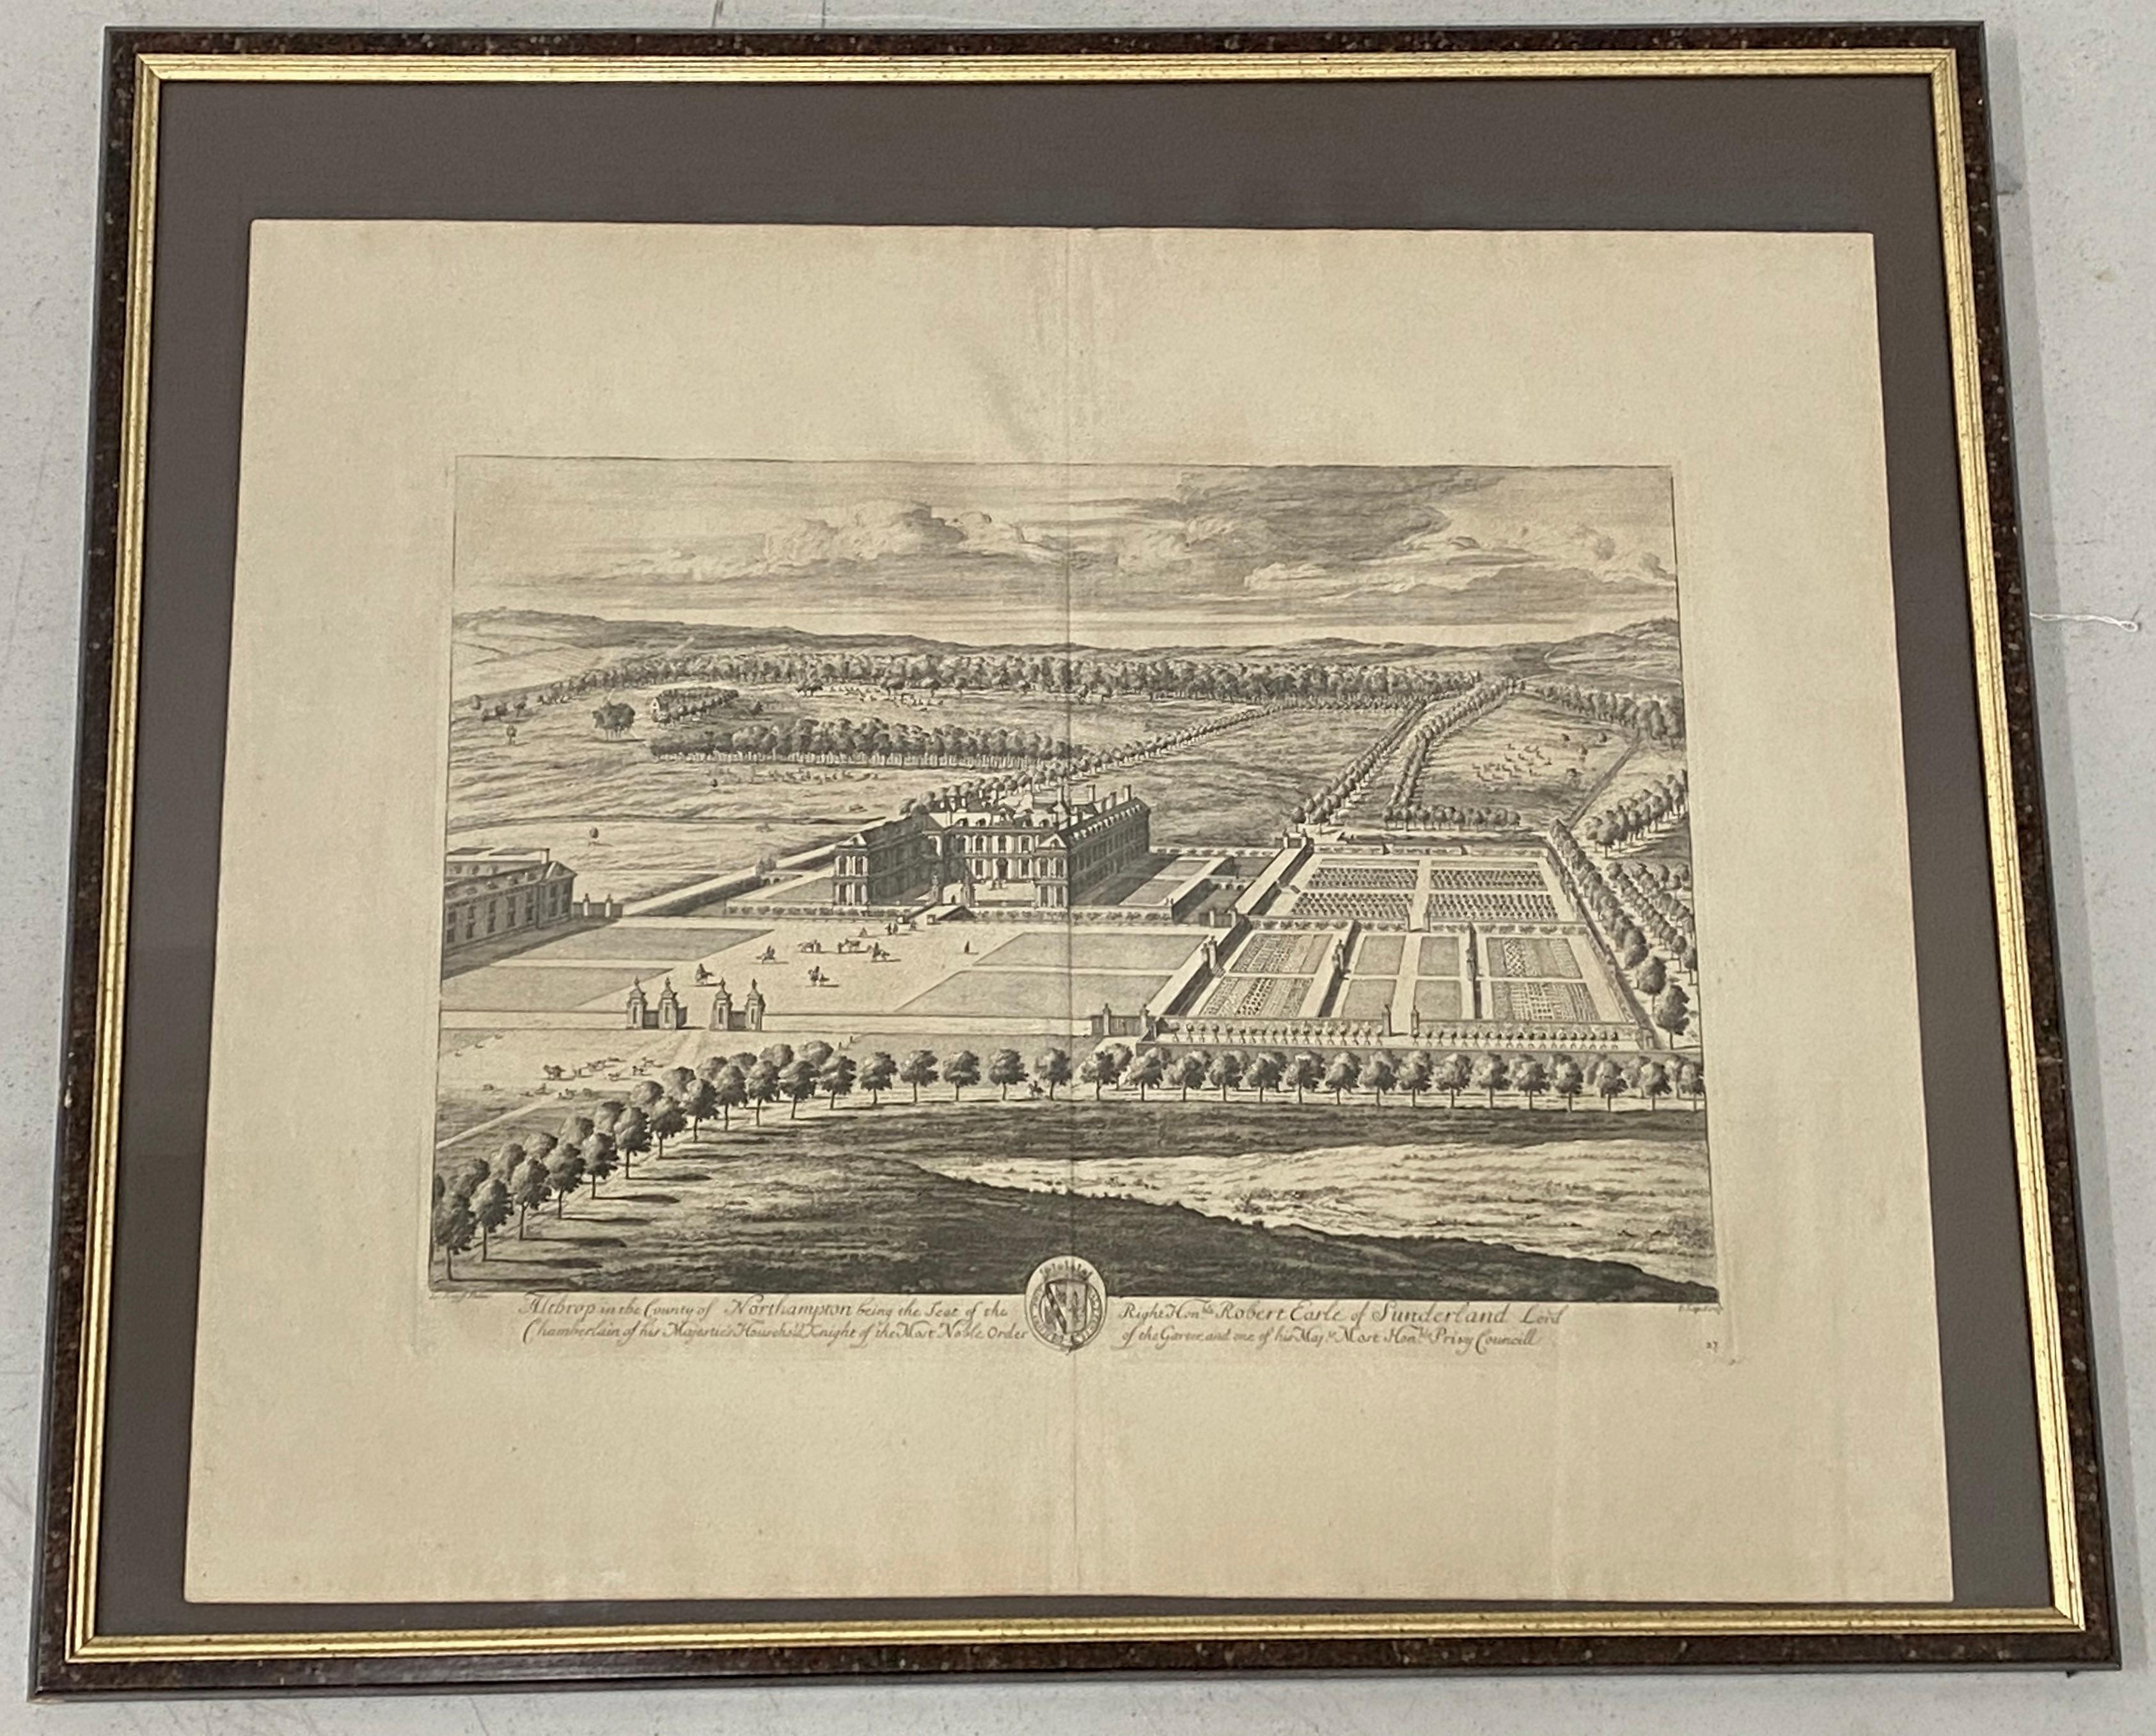 Landscape Print Unknown - Gravure du début du XVIIIe siècle « Birdeye View of Althrop House and Gardens » (Vue d'un œil d'oiseau de la maison et des jardins d'Althrop) C.1724